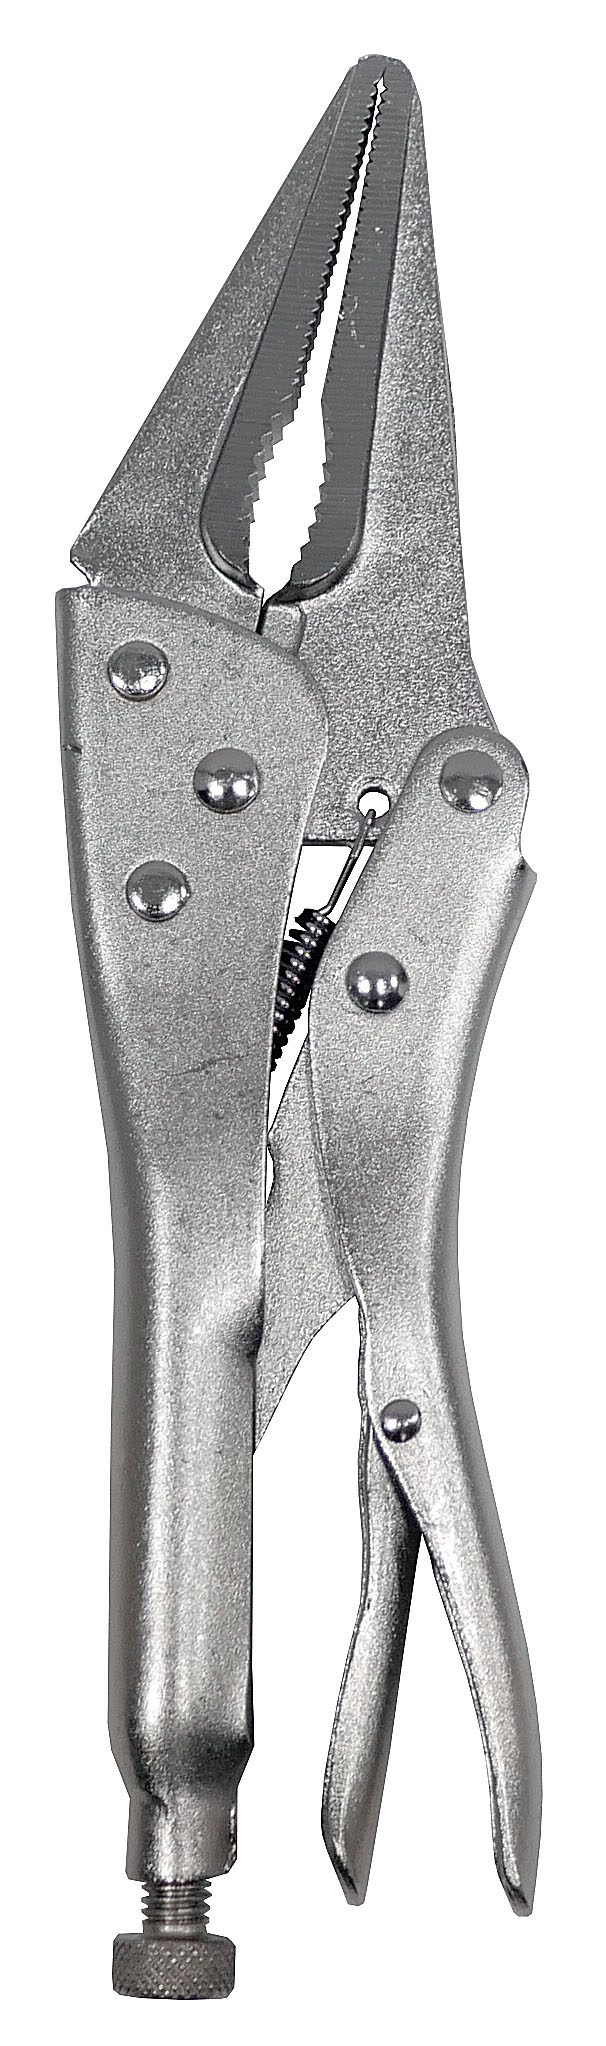 Клещи Энкор зажимные 230 мм с удлиненными губками - 2 шт. с удлиненными губками и прорезиненными ручками тиски jonnesway